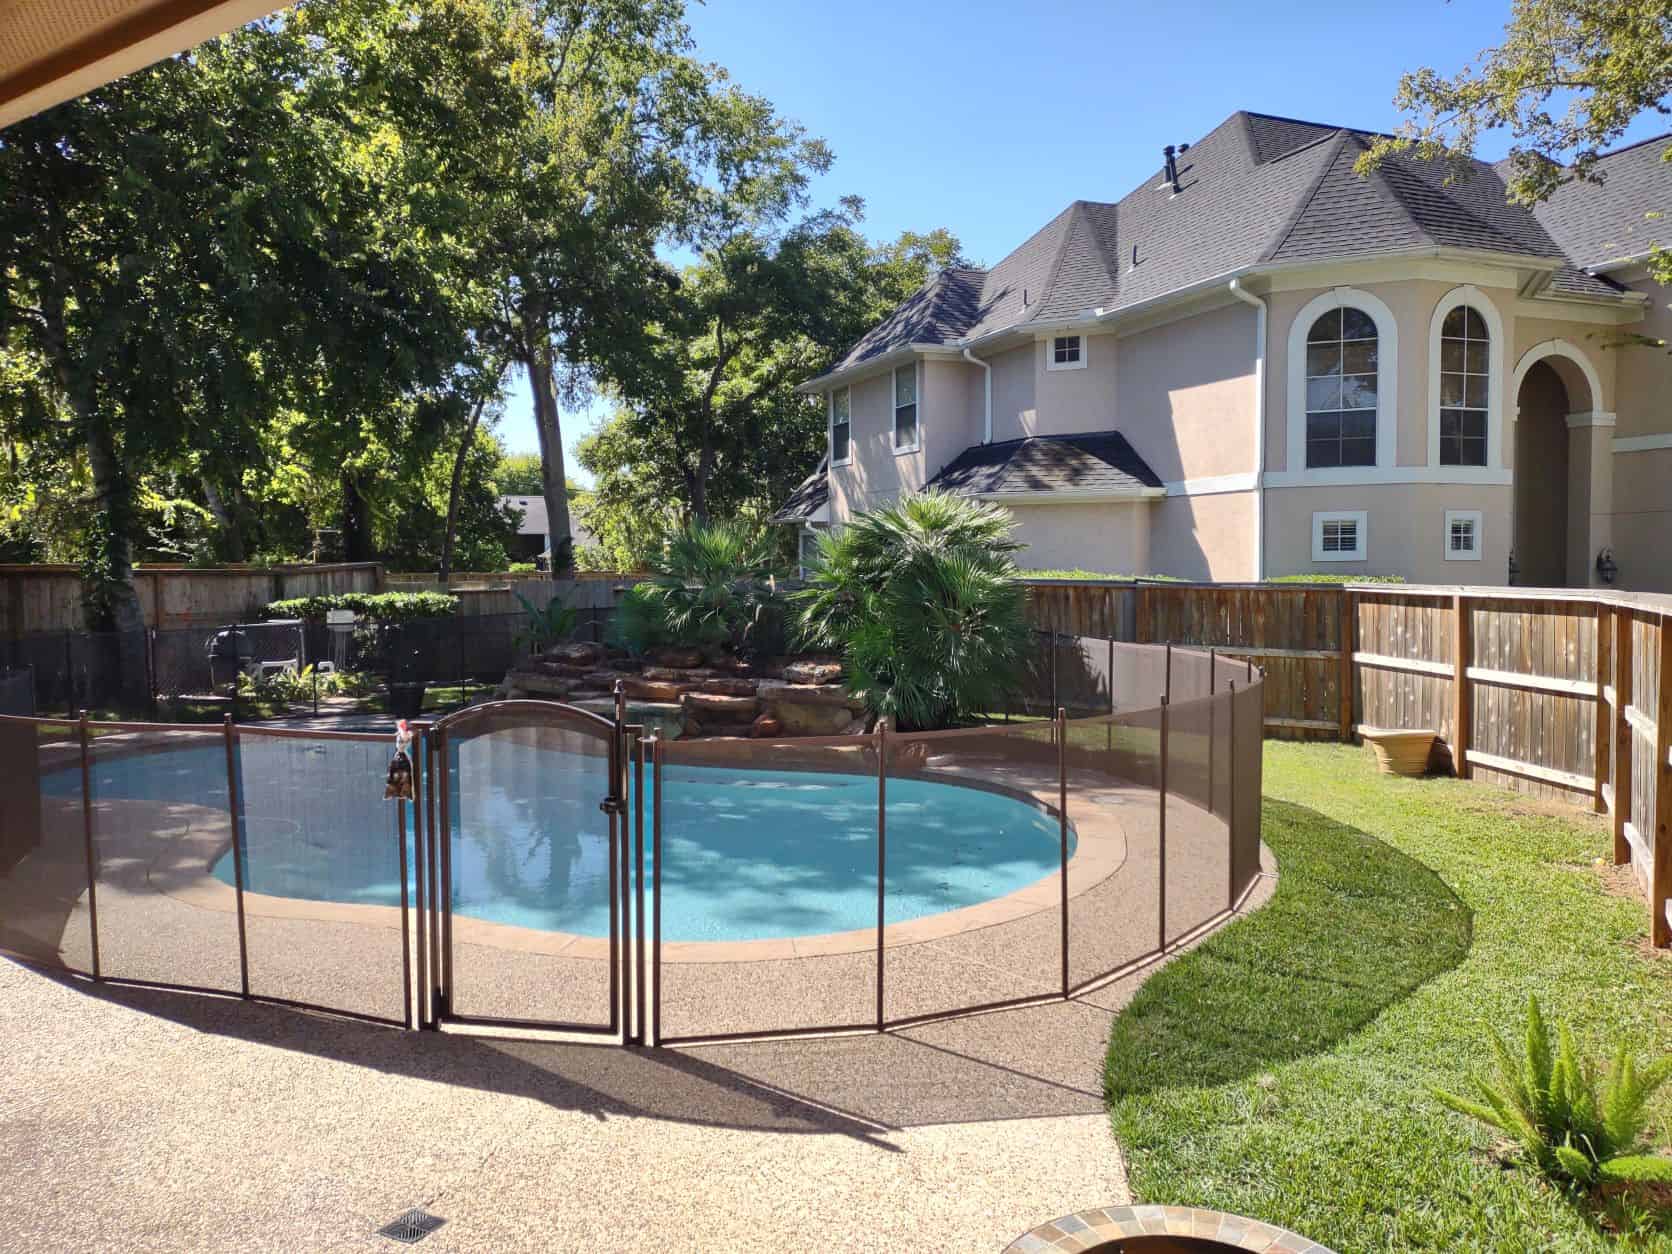 make small backyard pools safer